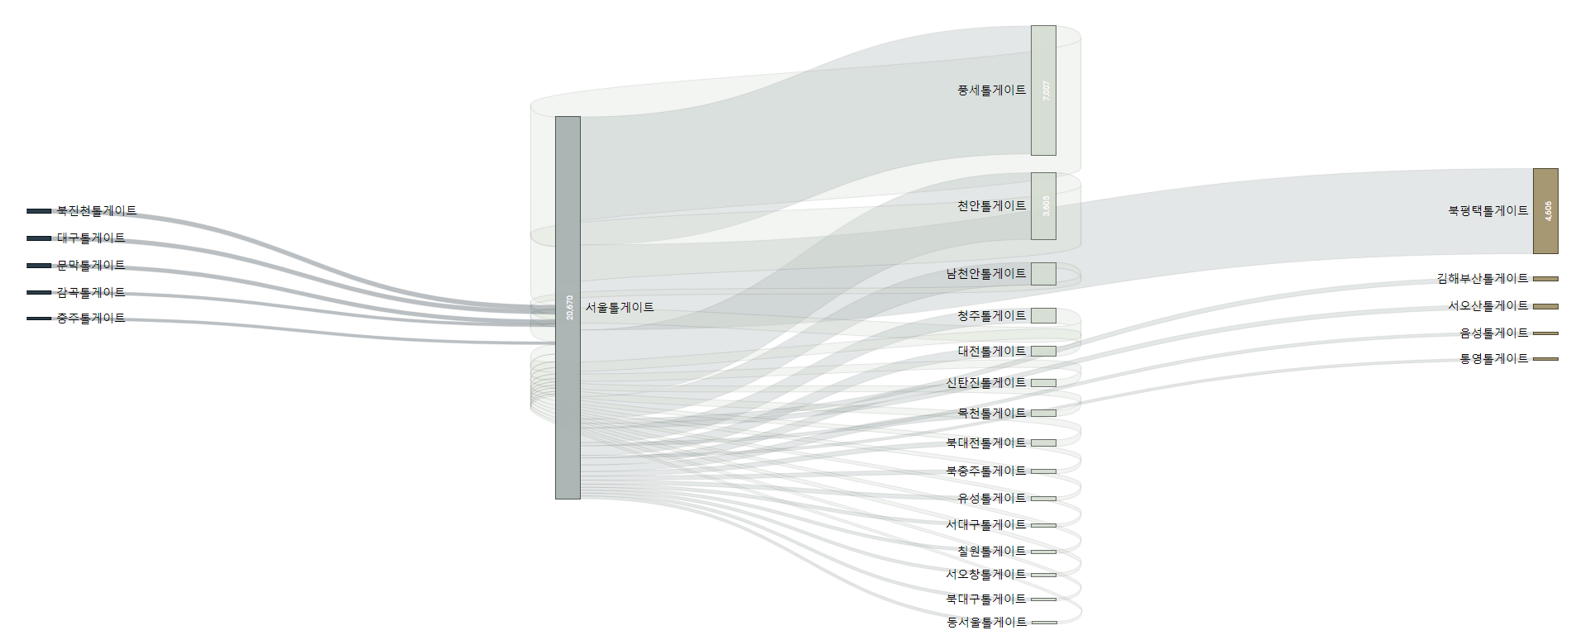 서울톨게이트의 진입/진출 상위 20개 TG,IC의 SanKey Chart